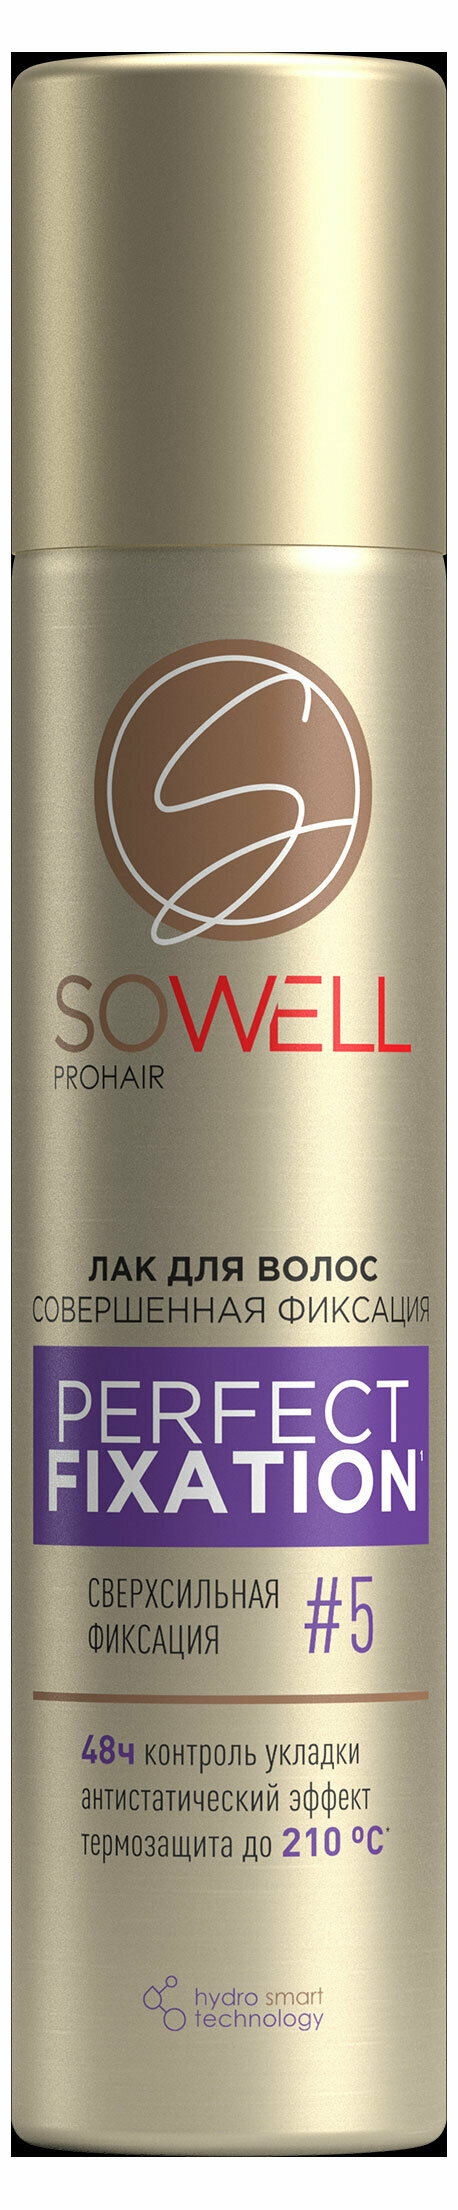 Лак для волос SoWell Perfect Fixation Совершенная фиксация сверхсильной фиксации №5, 75 мл